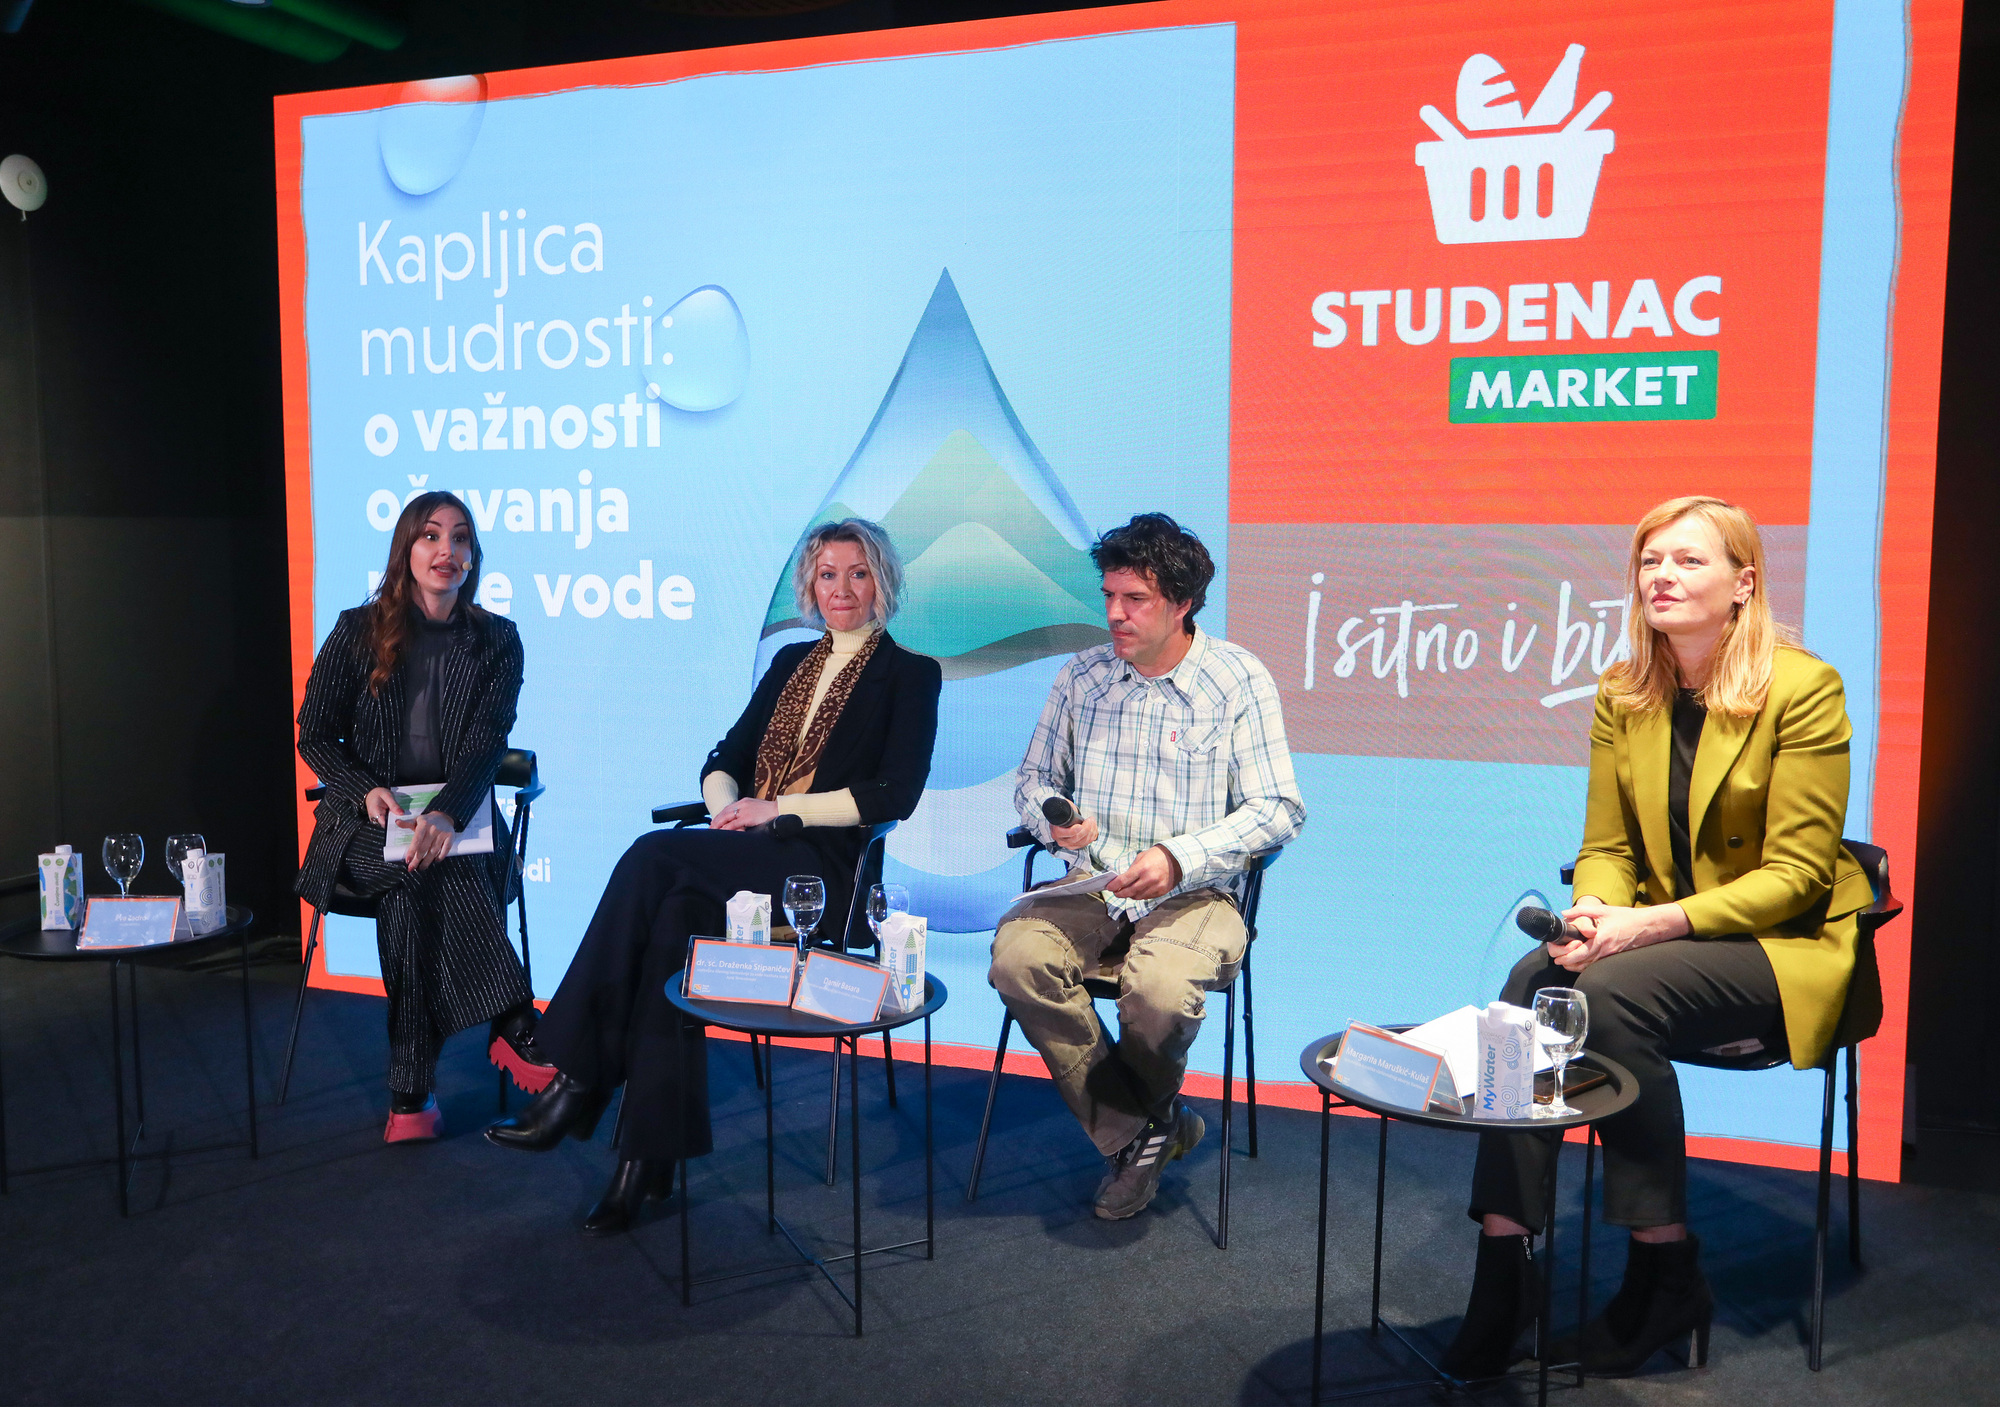 Konferencija u organizaciji Studenca u slatkovodnom akvariju Aquatika. Tema je Međunarodni dan voda i konferencija označava početak kampanje za zaštitu voda u Hrvatskoj.